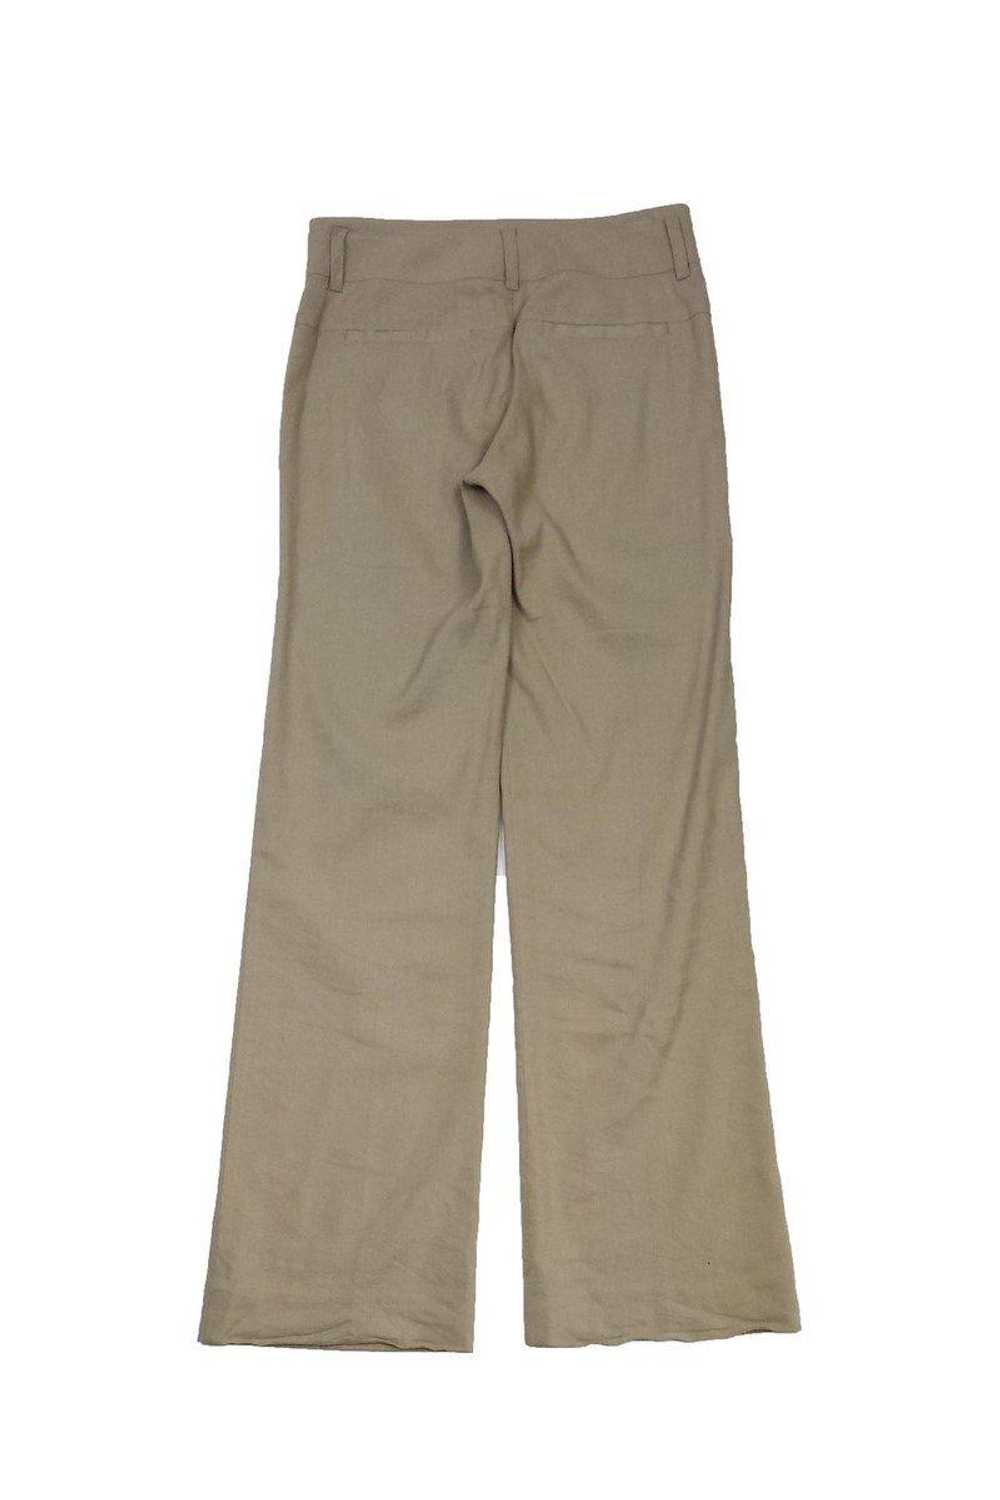 Vince - Tan Linen Trousers Sz 2 - image 2